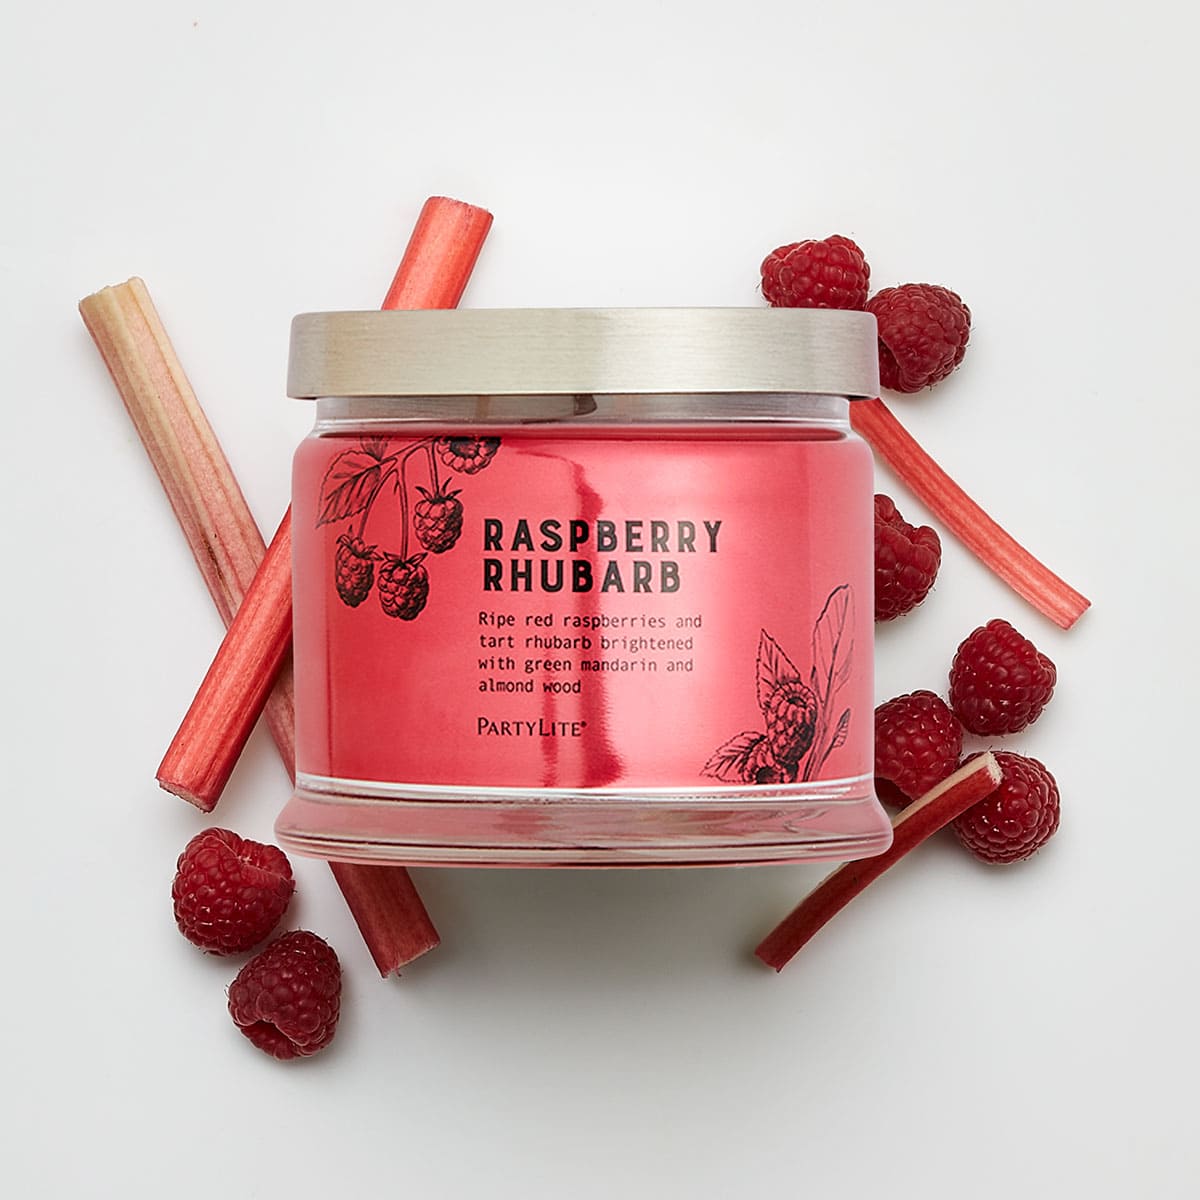 Raspberry Rhubarb 3-Wick Jar Candle